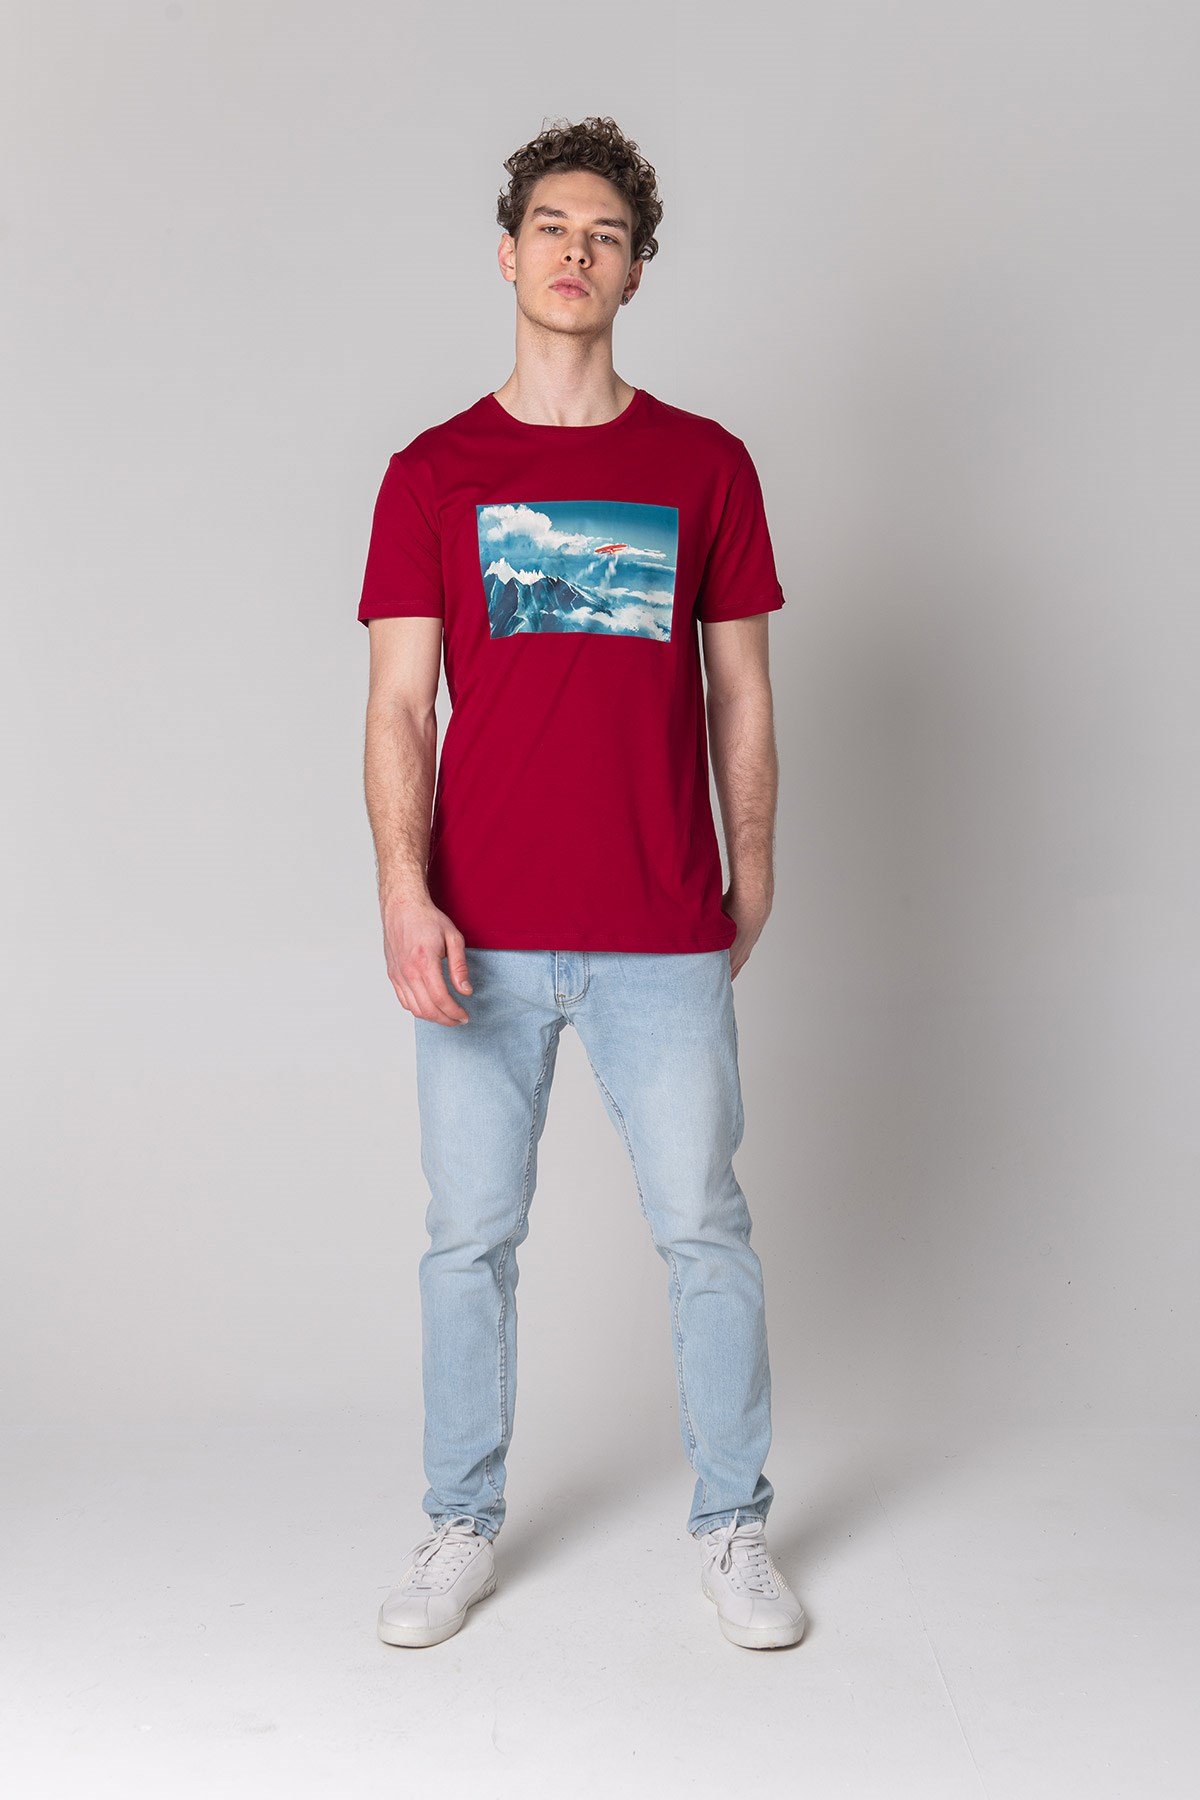 Erkek Baskılı T-Shirt | JOHN FRANK Yeni Tişört koleksiyonu